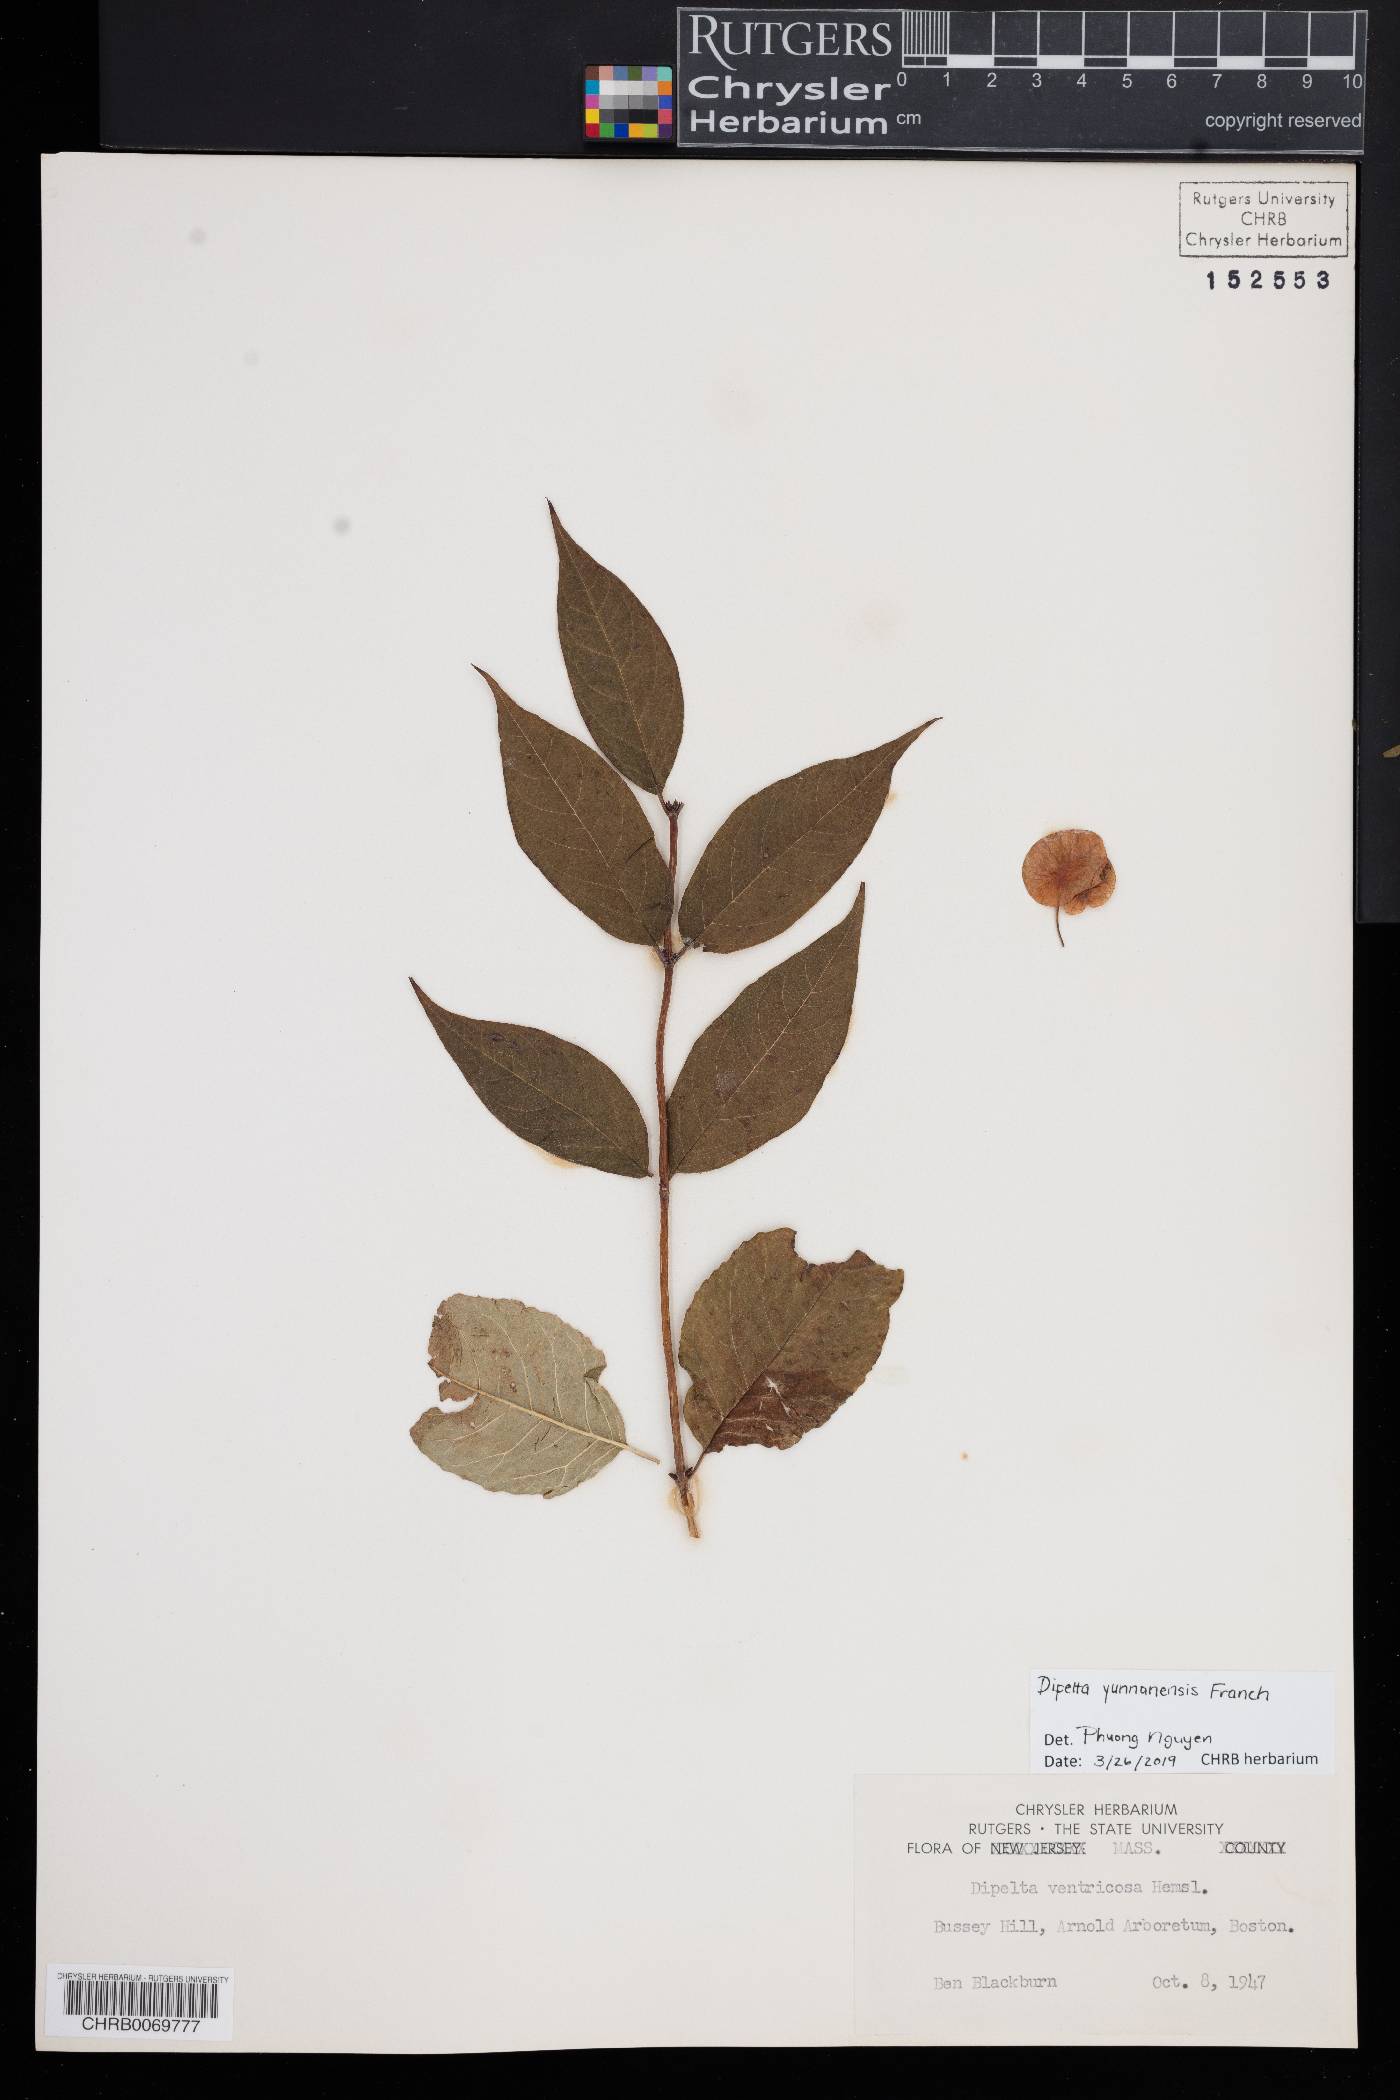 Dipelta yunnanensis image